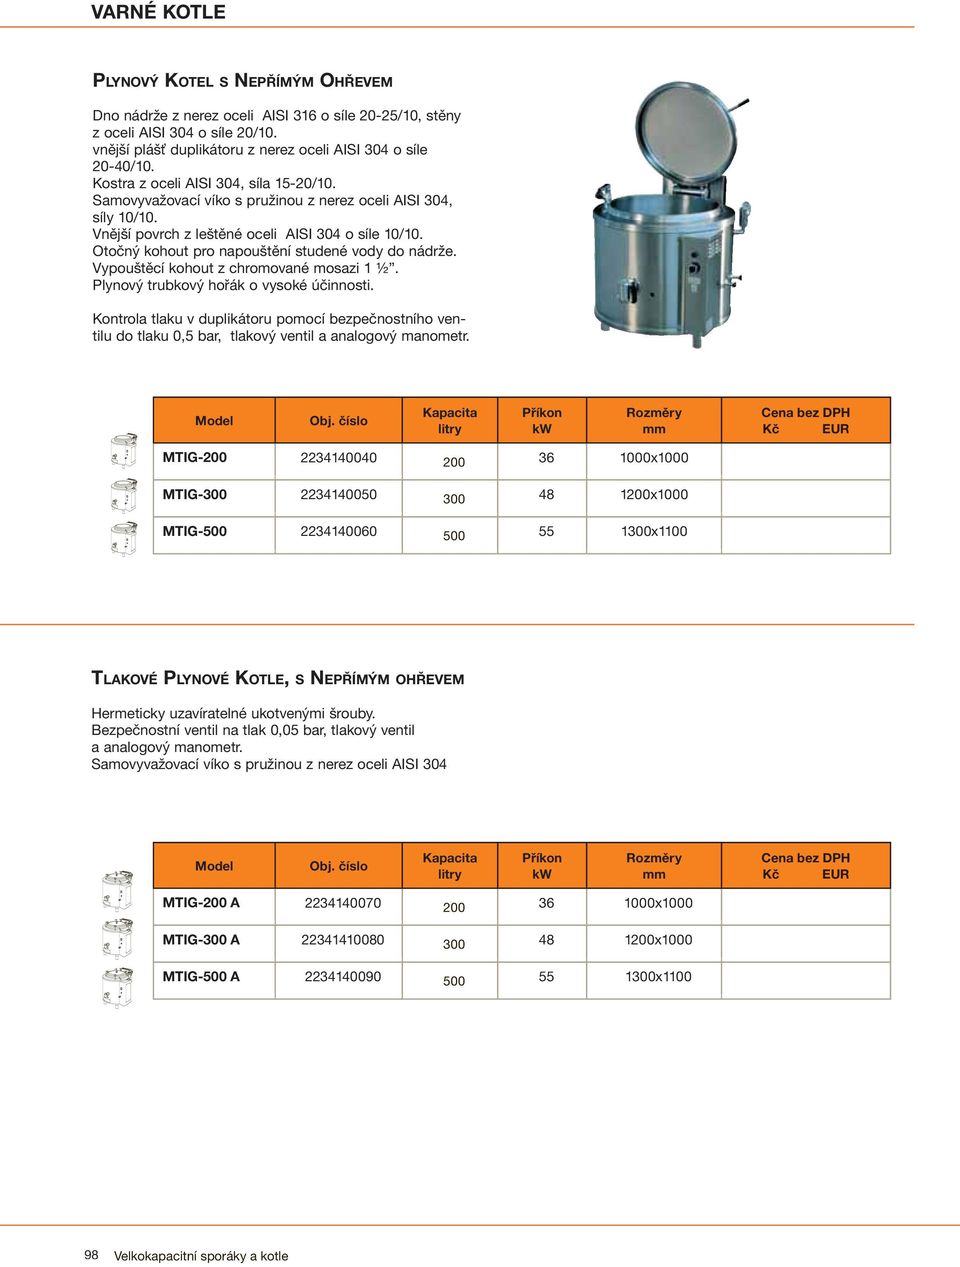 Kontrola tlaku v duplikátoru pomocí bezpečnostního ventilu do tlaku 0,5 bar, tlakový ventil a analogový manometr.